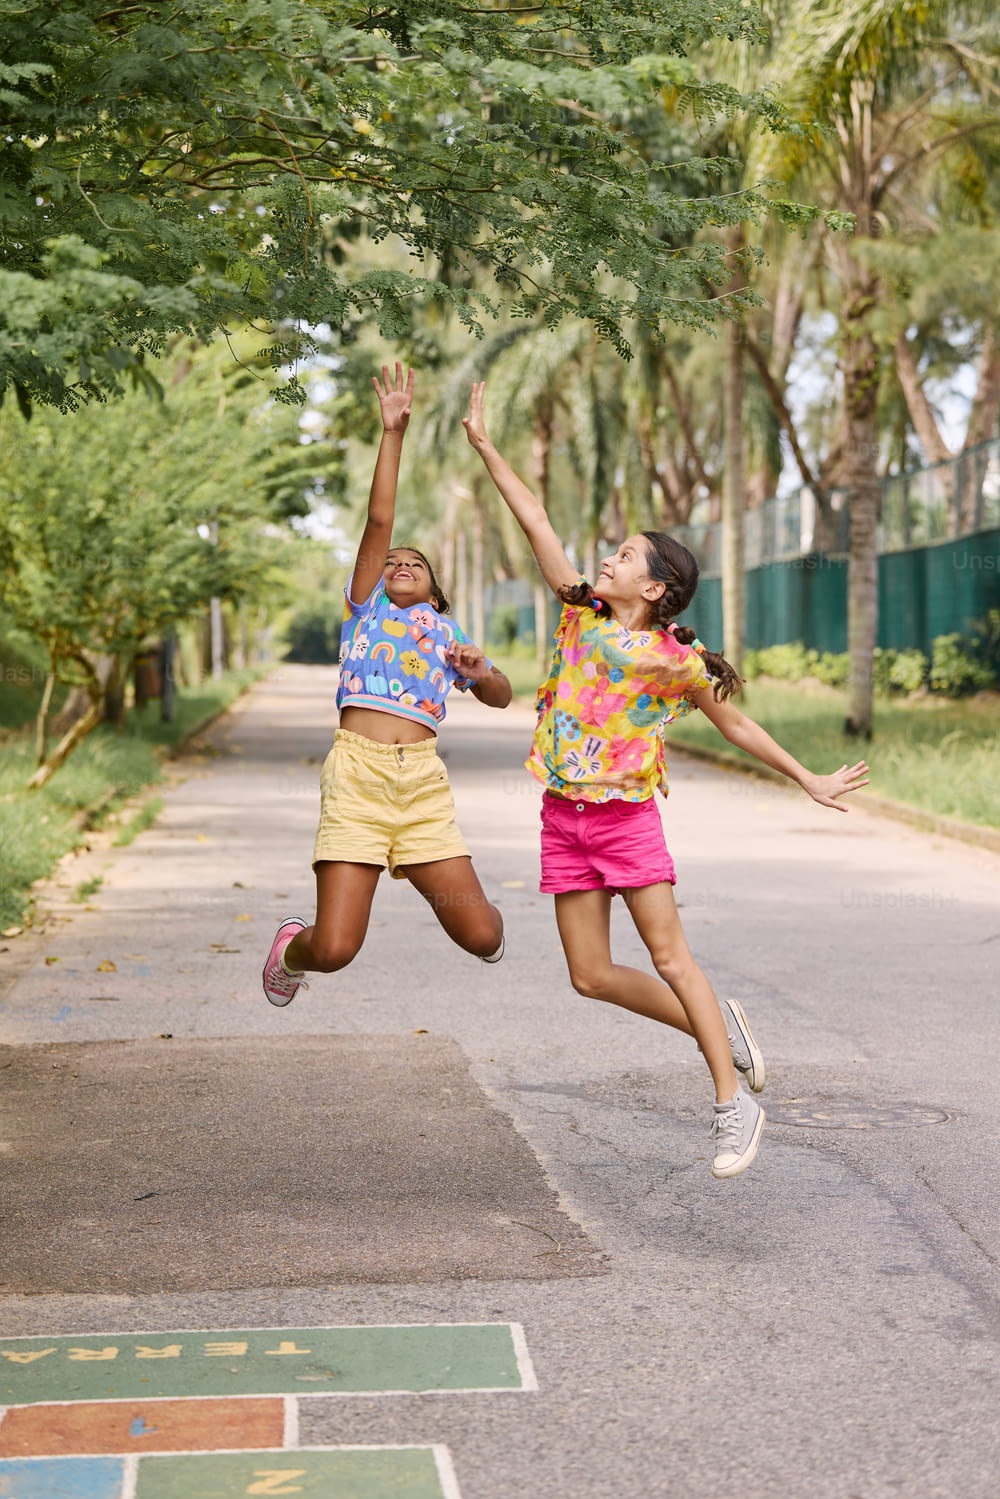 Dos chicas jóvenes saltando en el aire